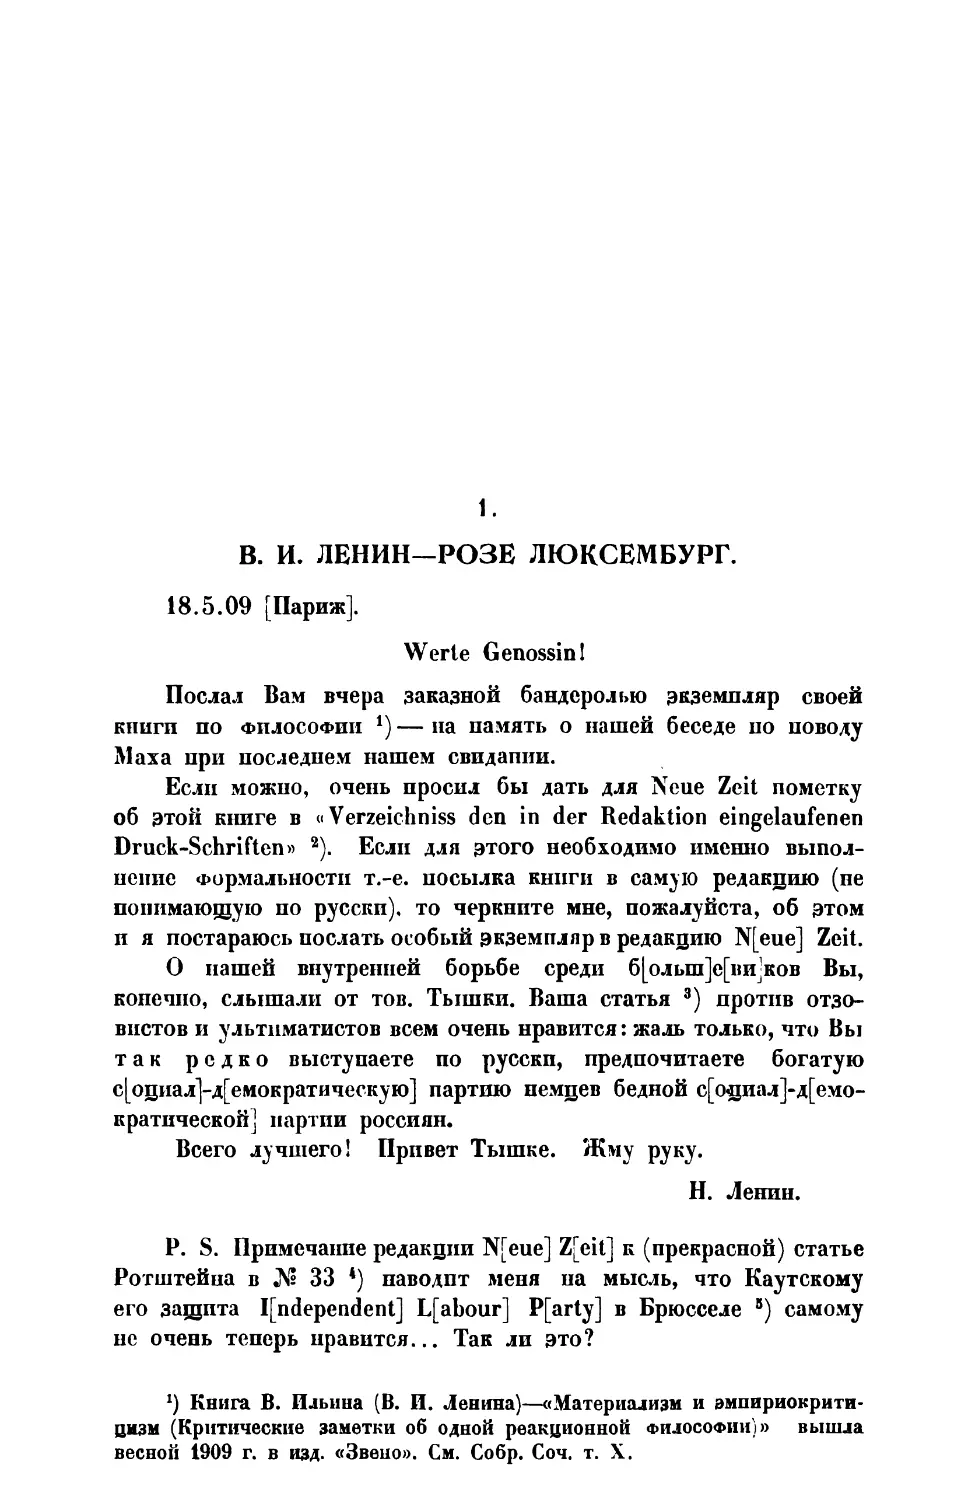 1. В. И . Лении. — Письмо Розе Люксембург от 18 V 1909 г.